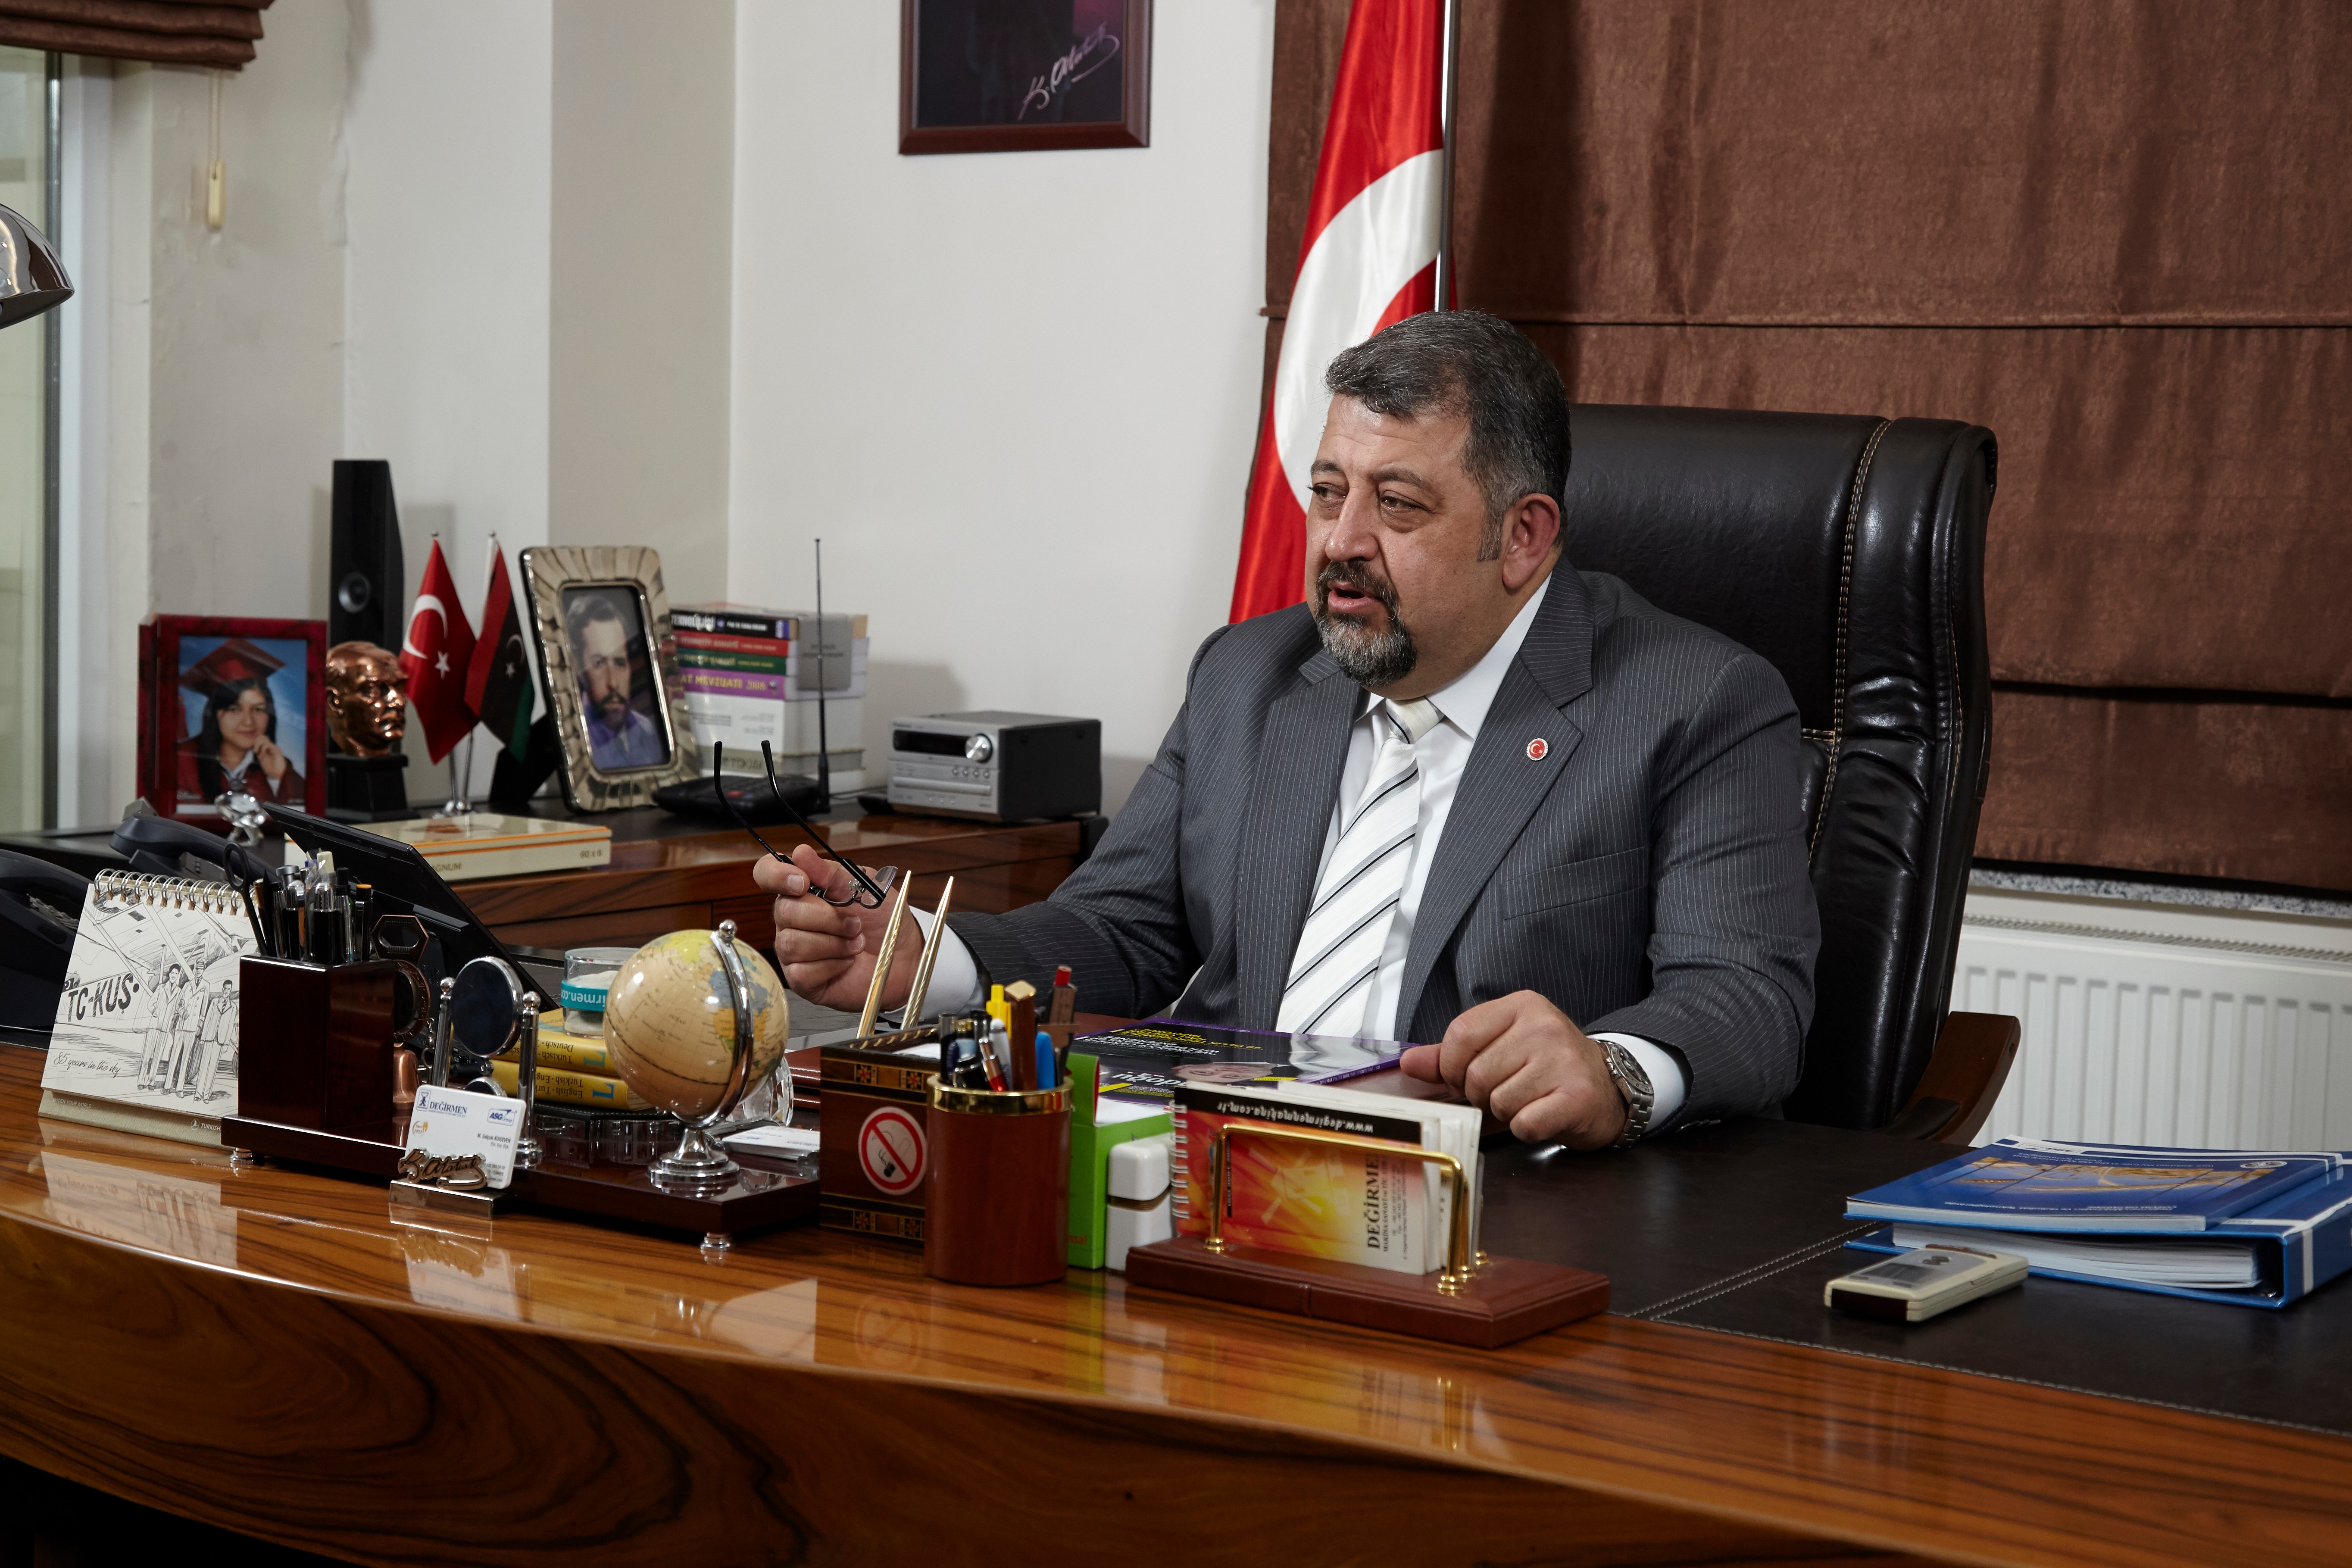 Değirmen Makine Yönetim Kurulu Başkanı Mehmet Selçuk Ataseven